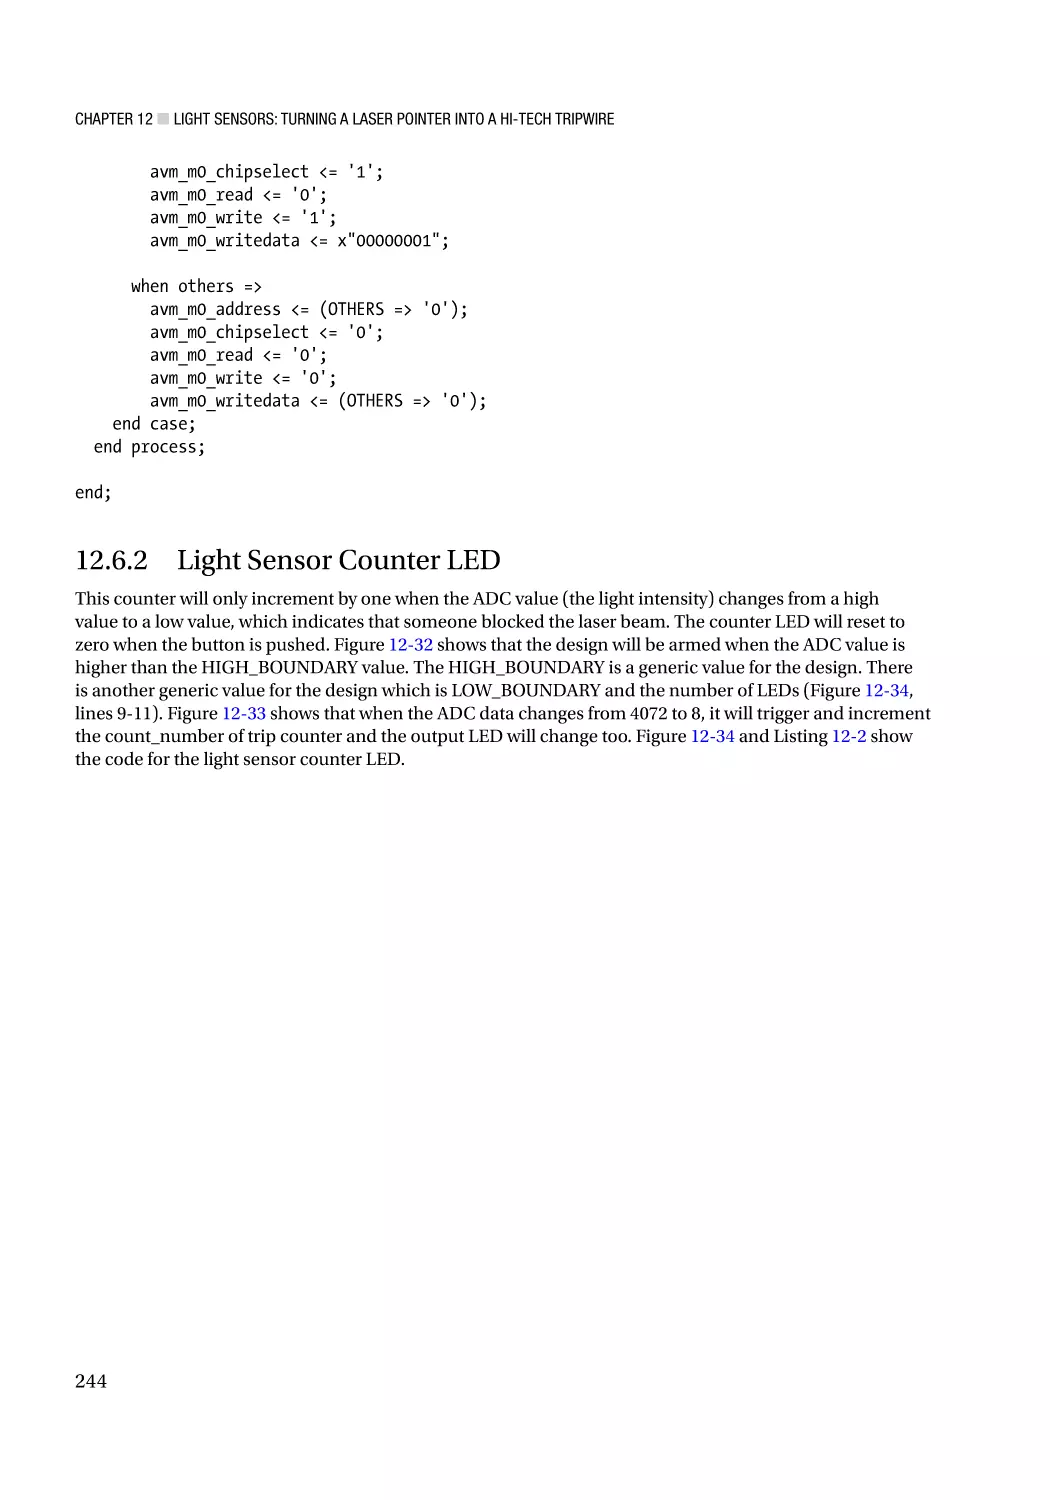 12.6.2 Light Sensor Counter LED